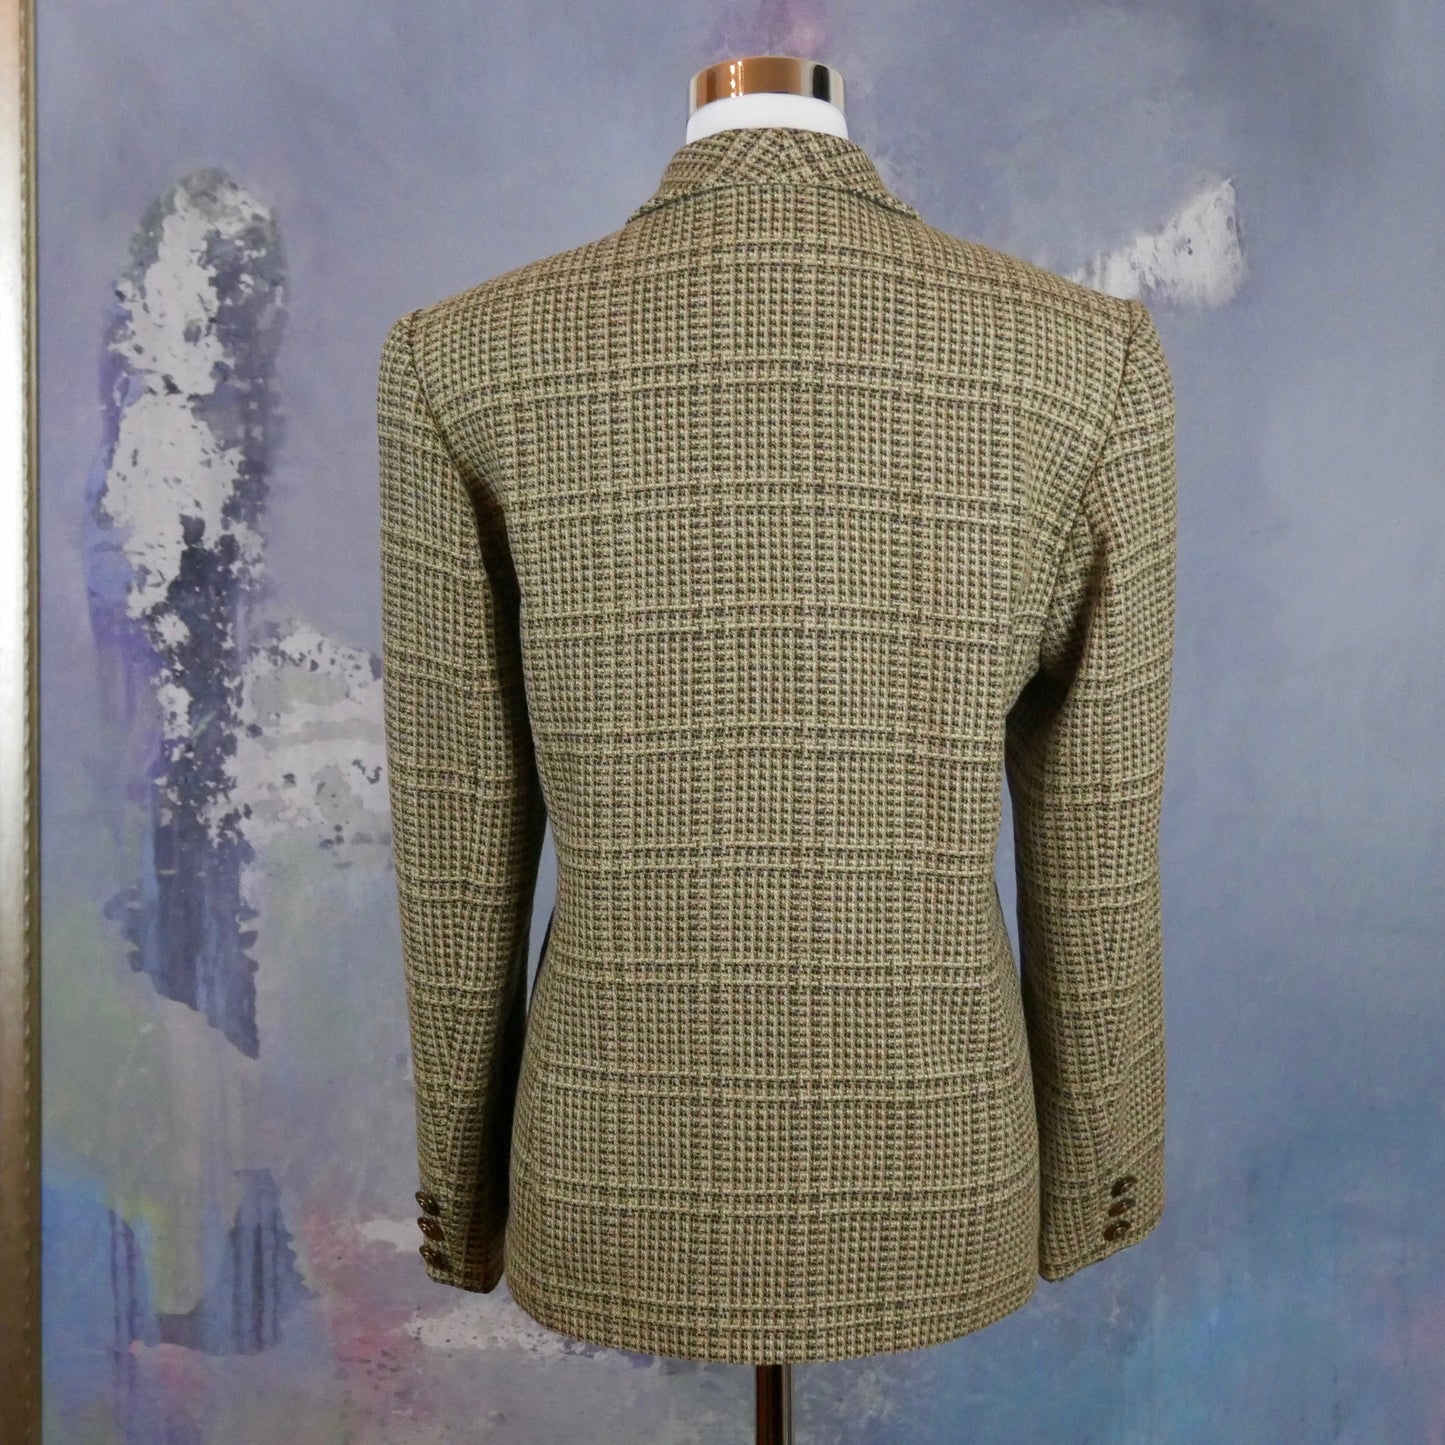 Finnish Vintage Blazer | Beige & Black Check Wool Blend Jacket | Large